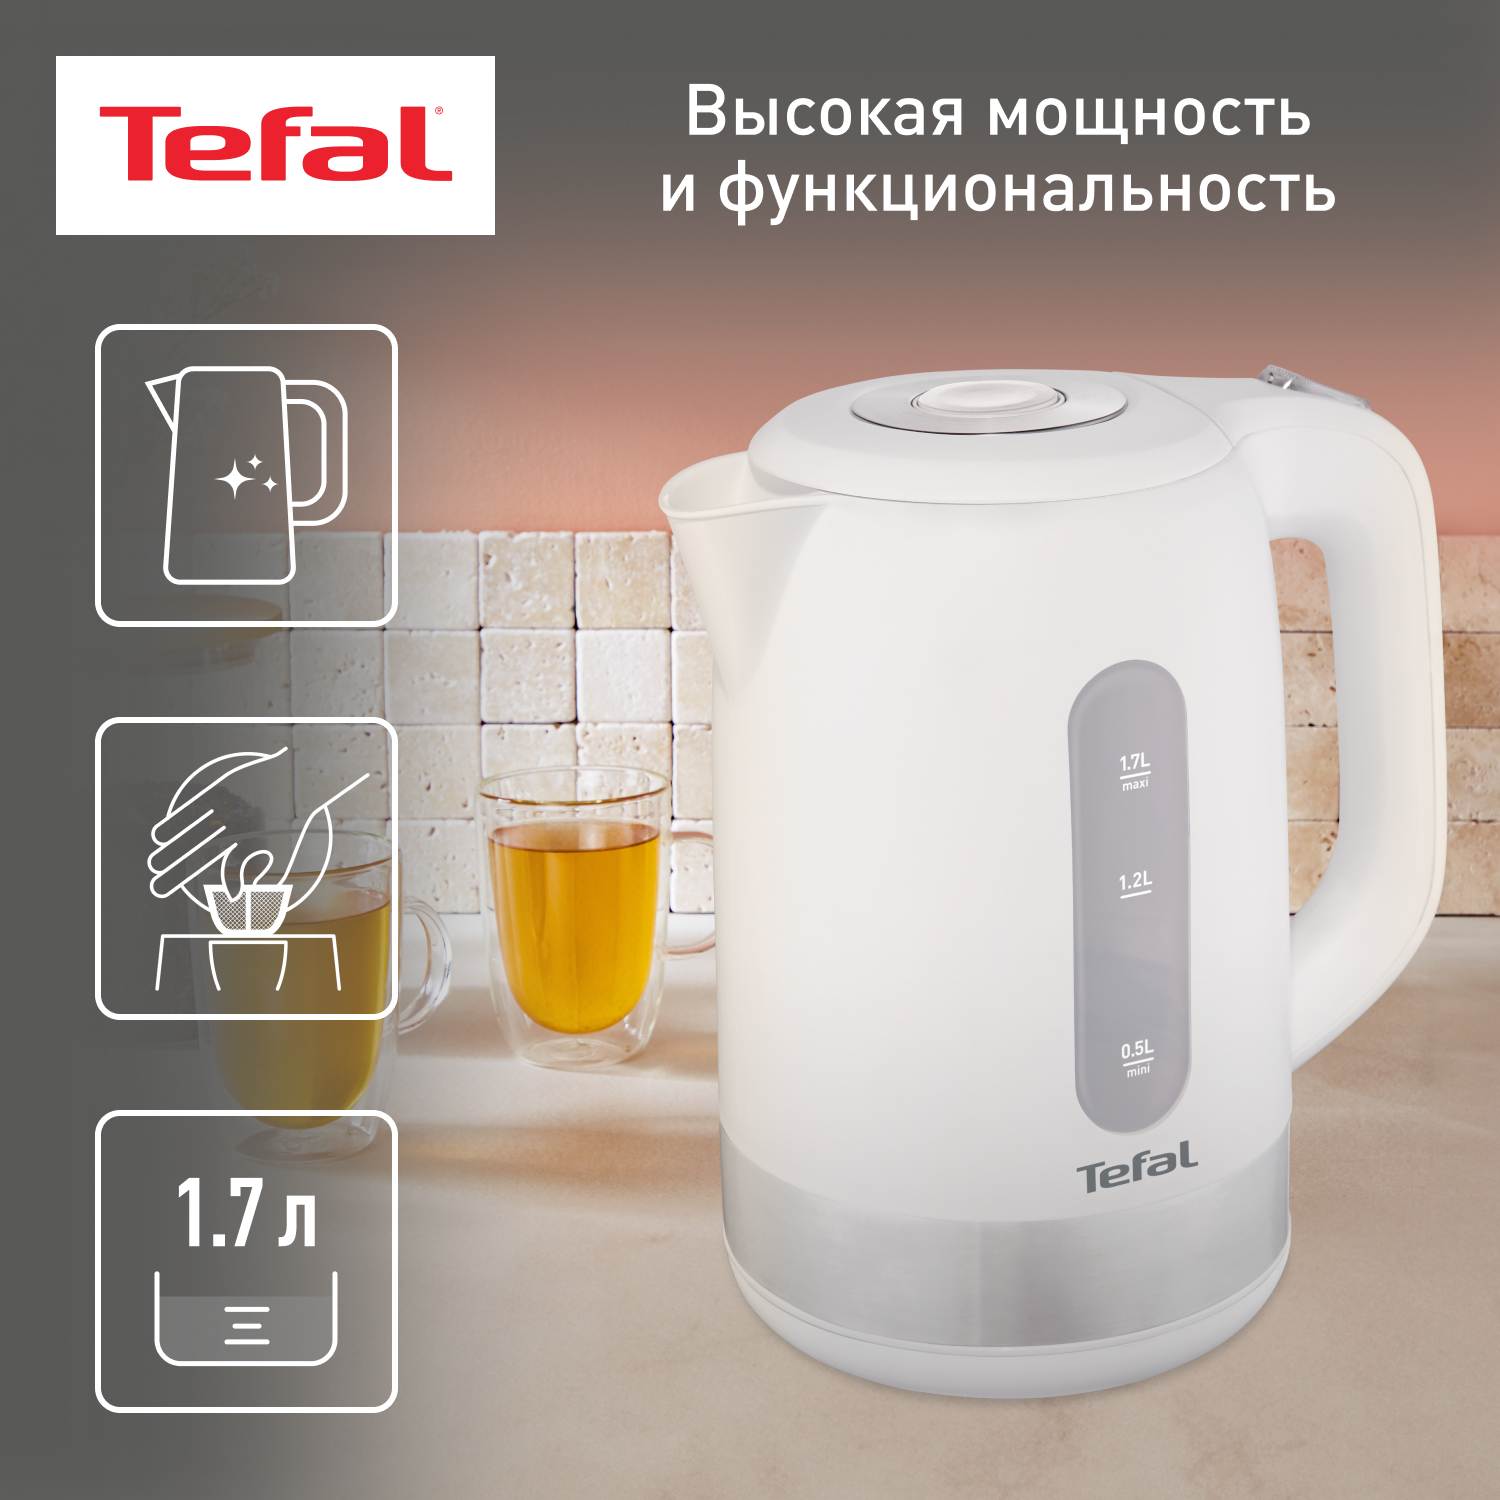 Чайник электрический Tefal KO330130 1.7 л белый, серебристый